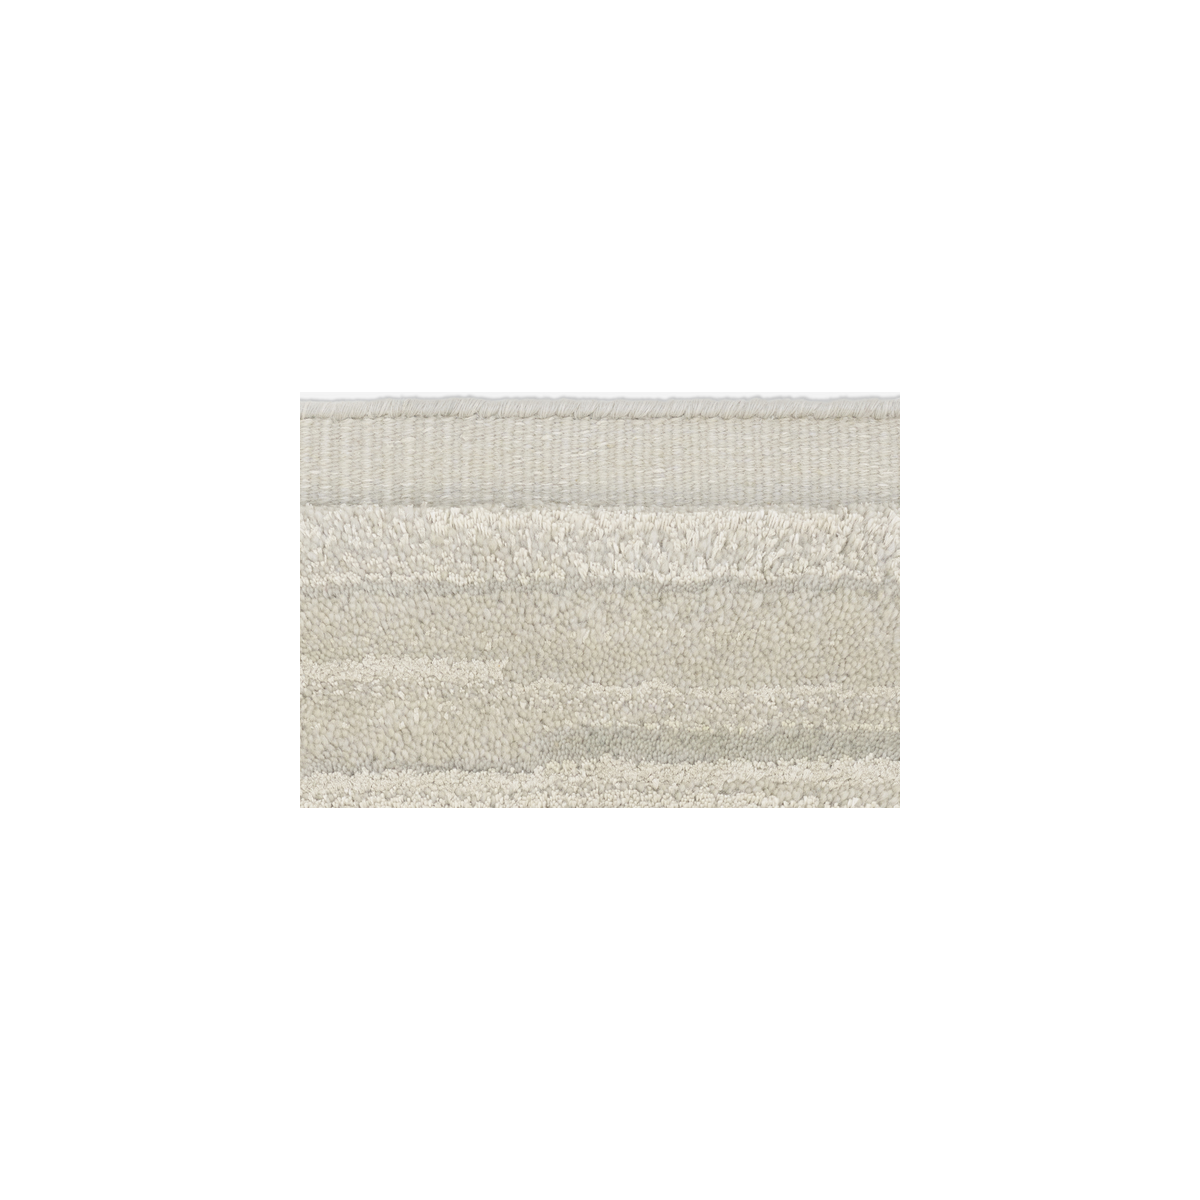 200x300cm - 0006 - Cascade rug